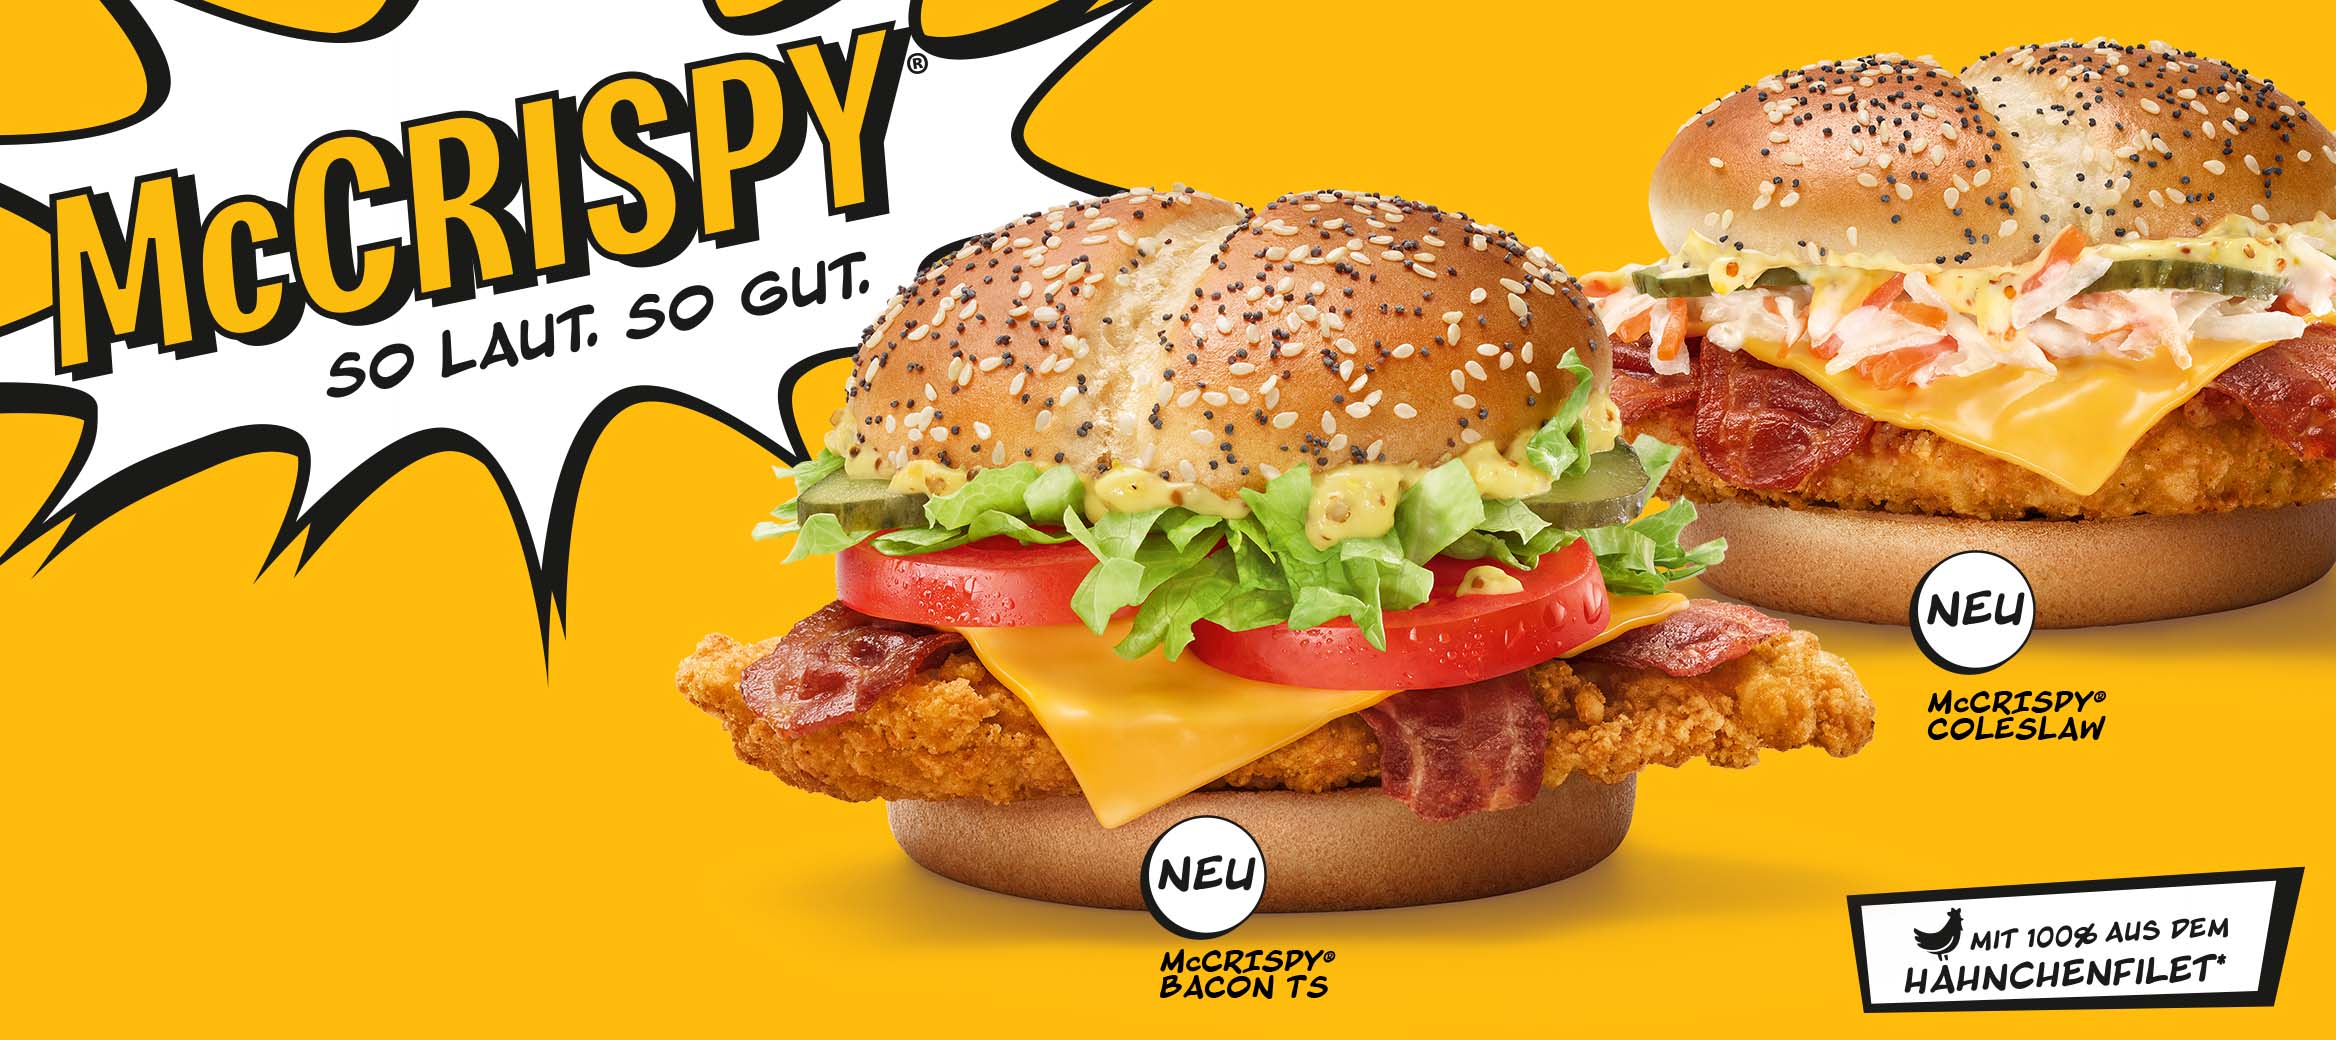 Der McCrispy, der neue McCrispy® Coleslaw und der neue McCrispy® Bacon TS sind abgebildet. Darüber steht: McCrispy®: So laut so gut.